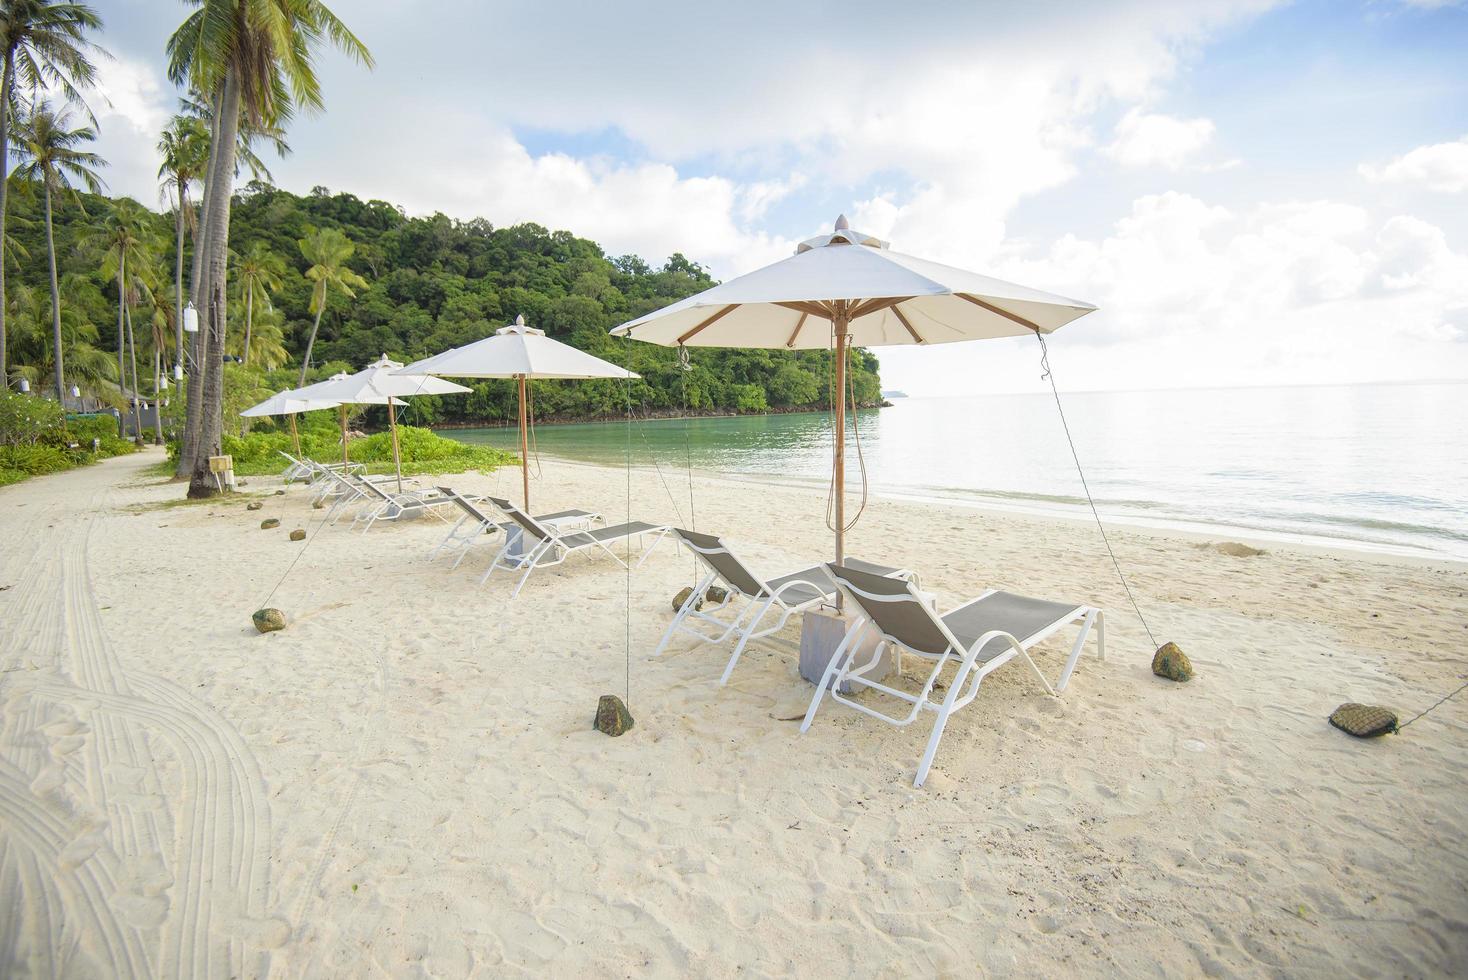 hermosa vista del paisaje de tumbonas en la playa tropical, el mar esmeralda y la arena blanca contra el cielo azul, bahía maya en la isla phi phi, tailandia foto